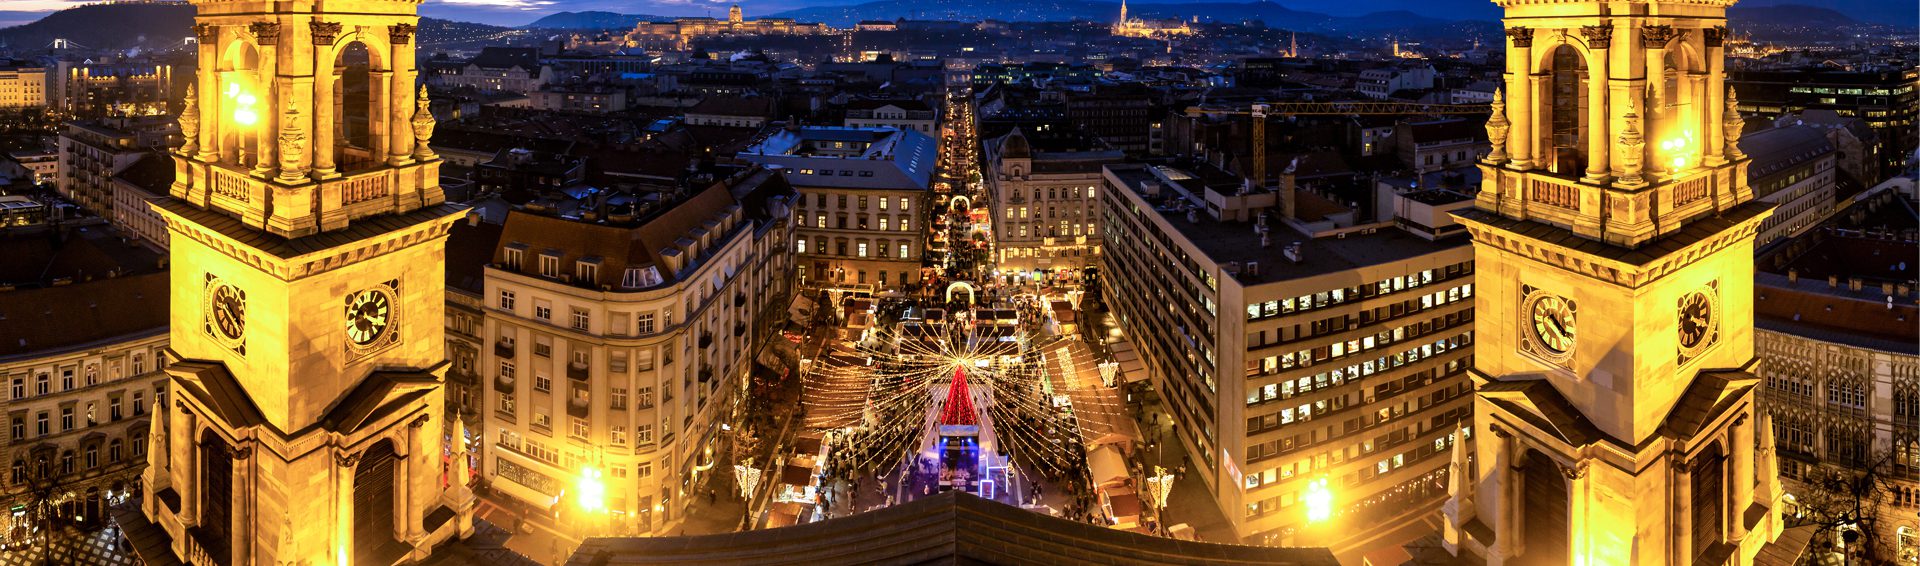 Dreamy Christmas Markets: Budapest to Munich